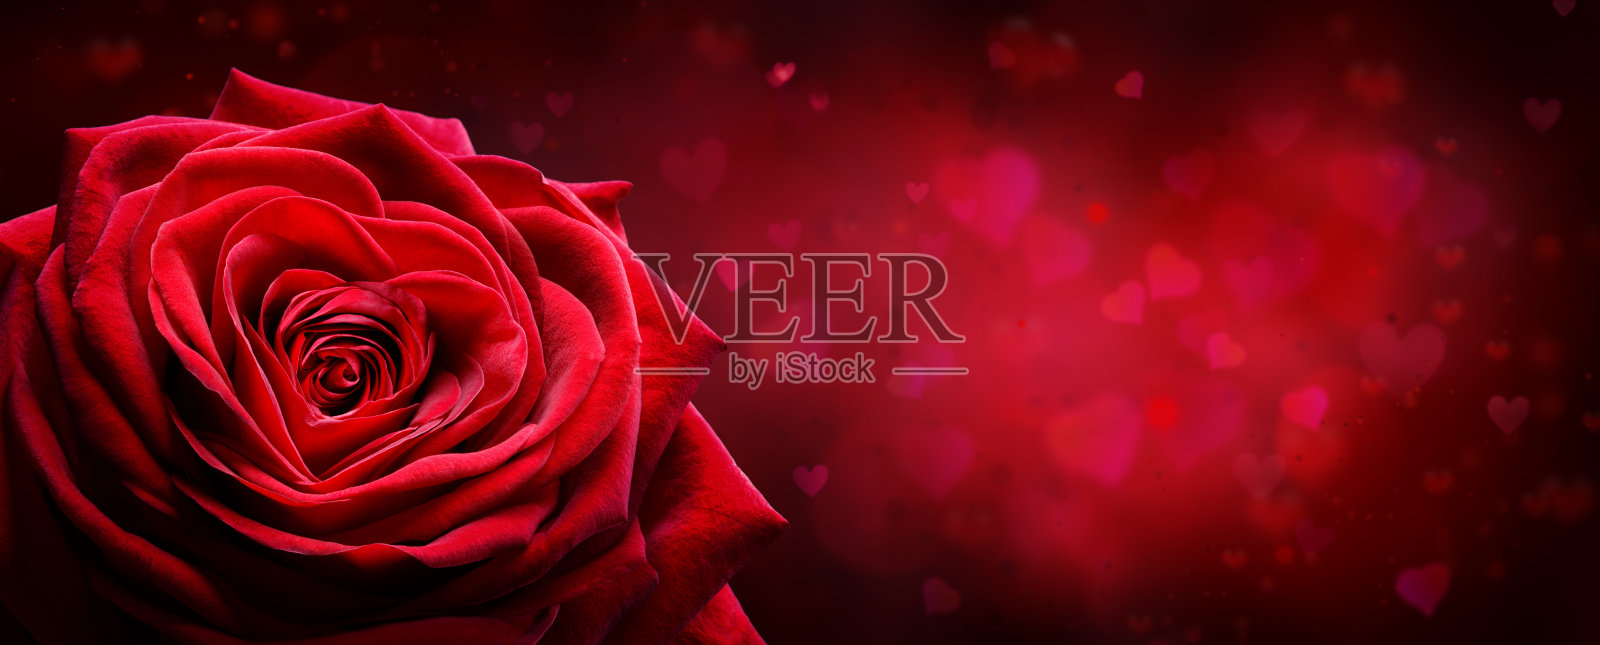 情人节卡片-红玫瑰形状的心在浪漫的背景照片摄影图片